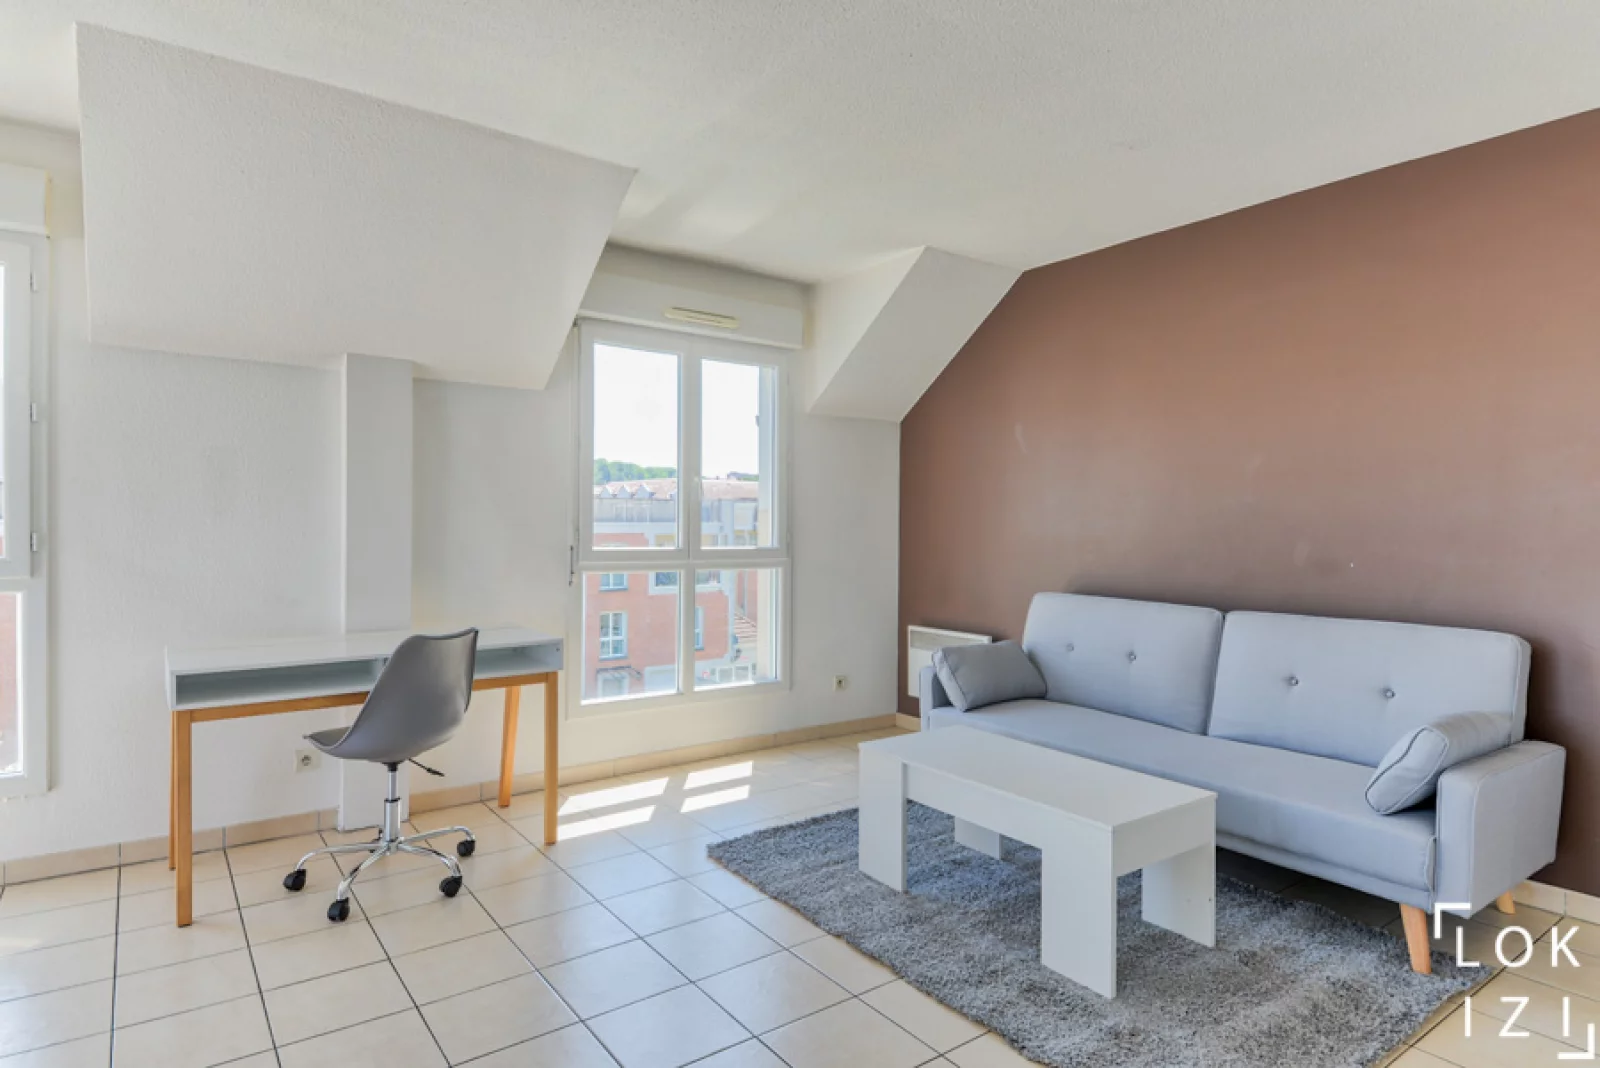  Location appartement duplex meubl 3 pices 67m (Paris est - Bry s/ Marne)